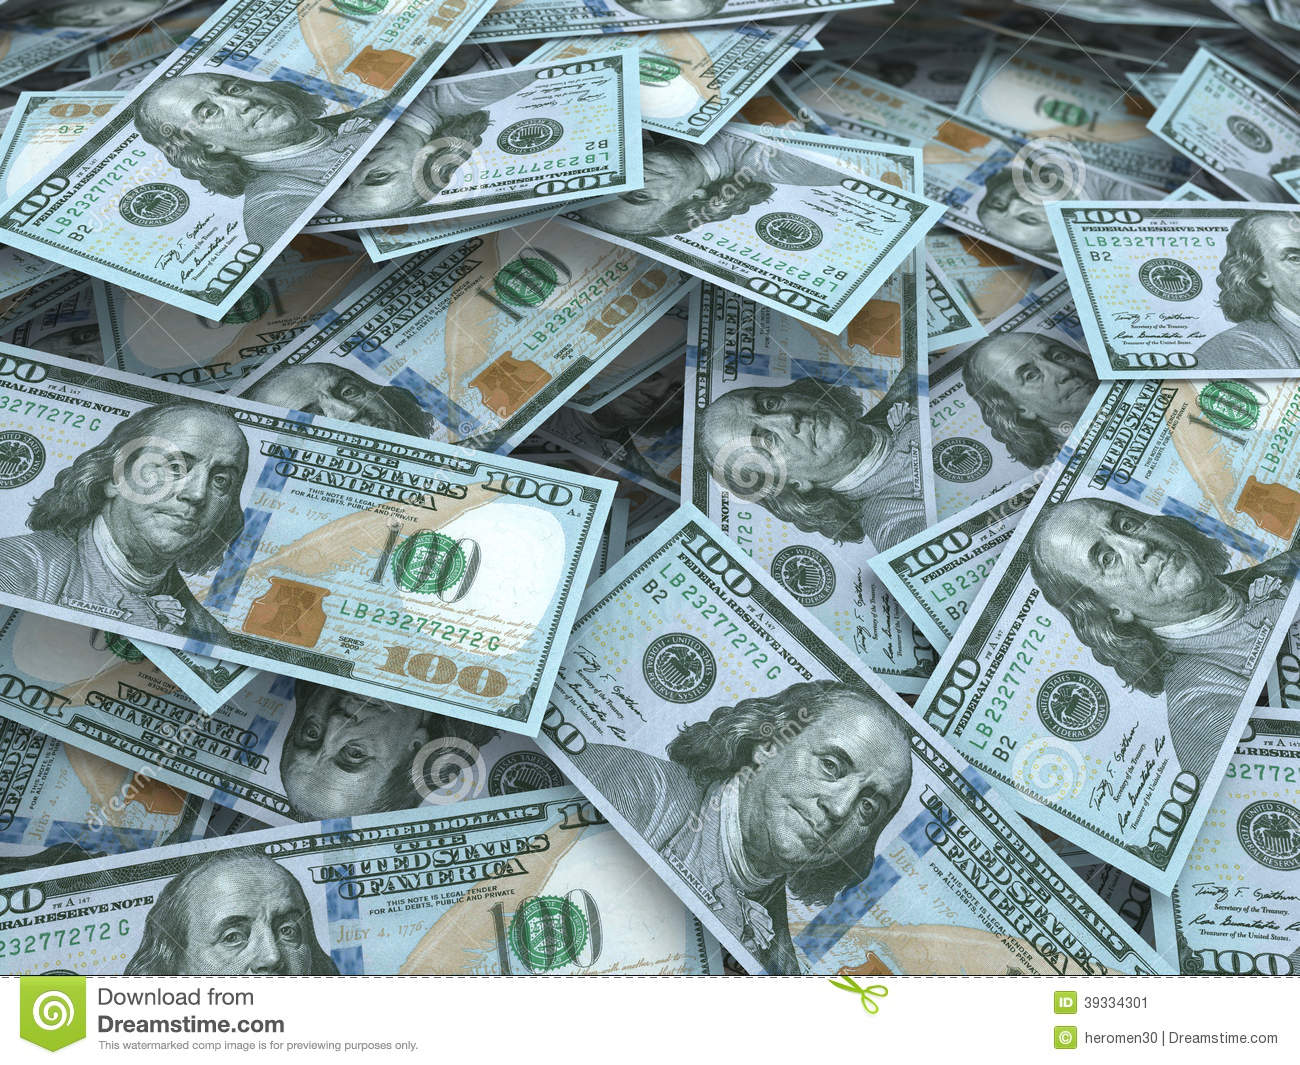 papier peint billet de 100 dollars,argent,en espèces,billet de banque,dollar,manipulation de l'argent